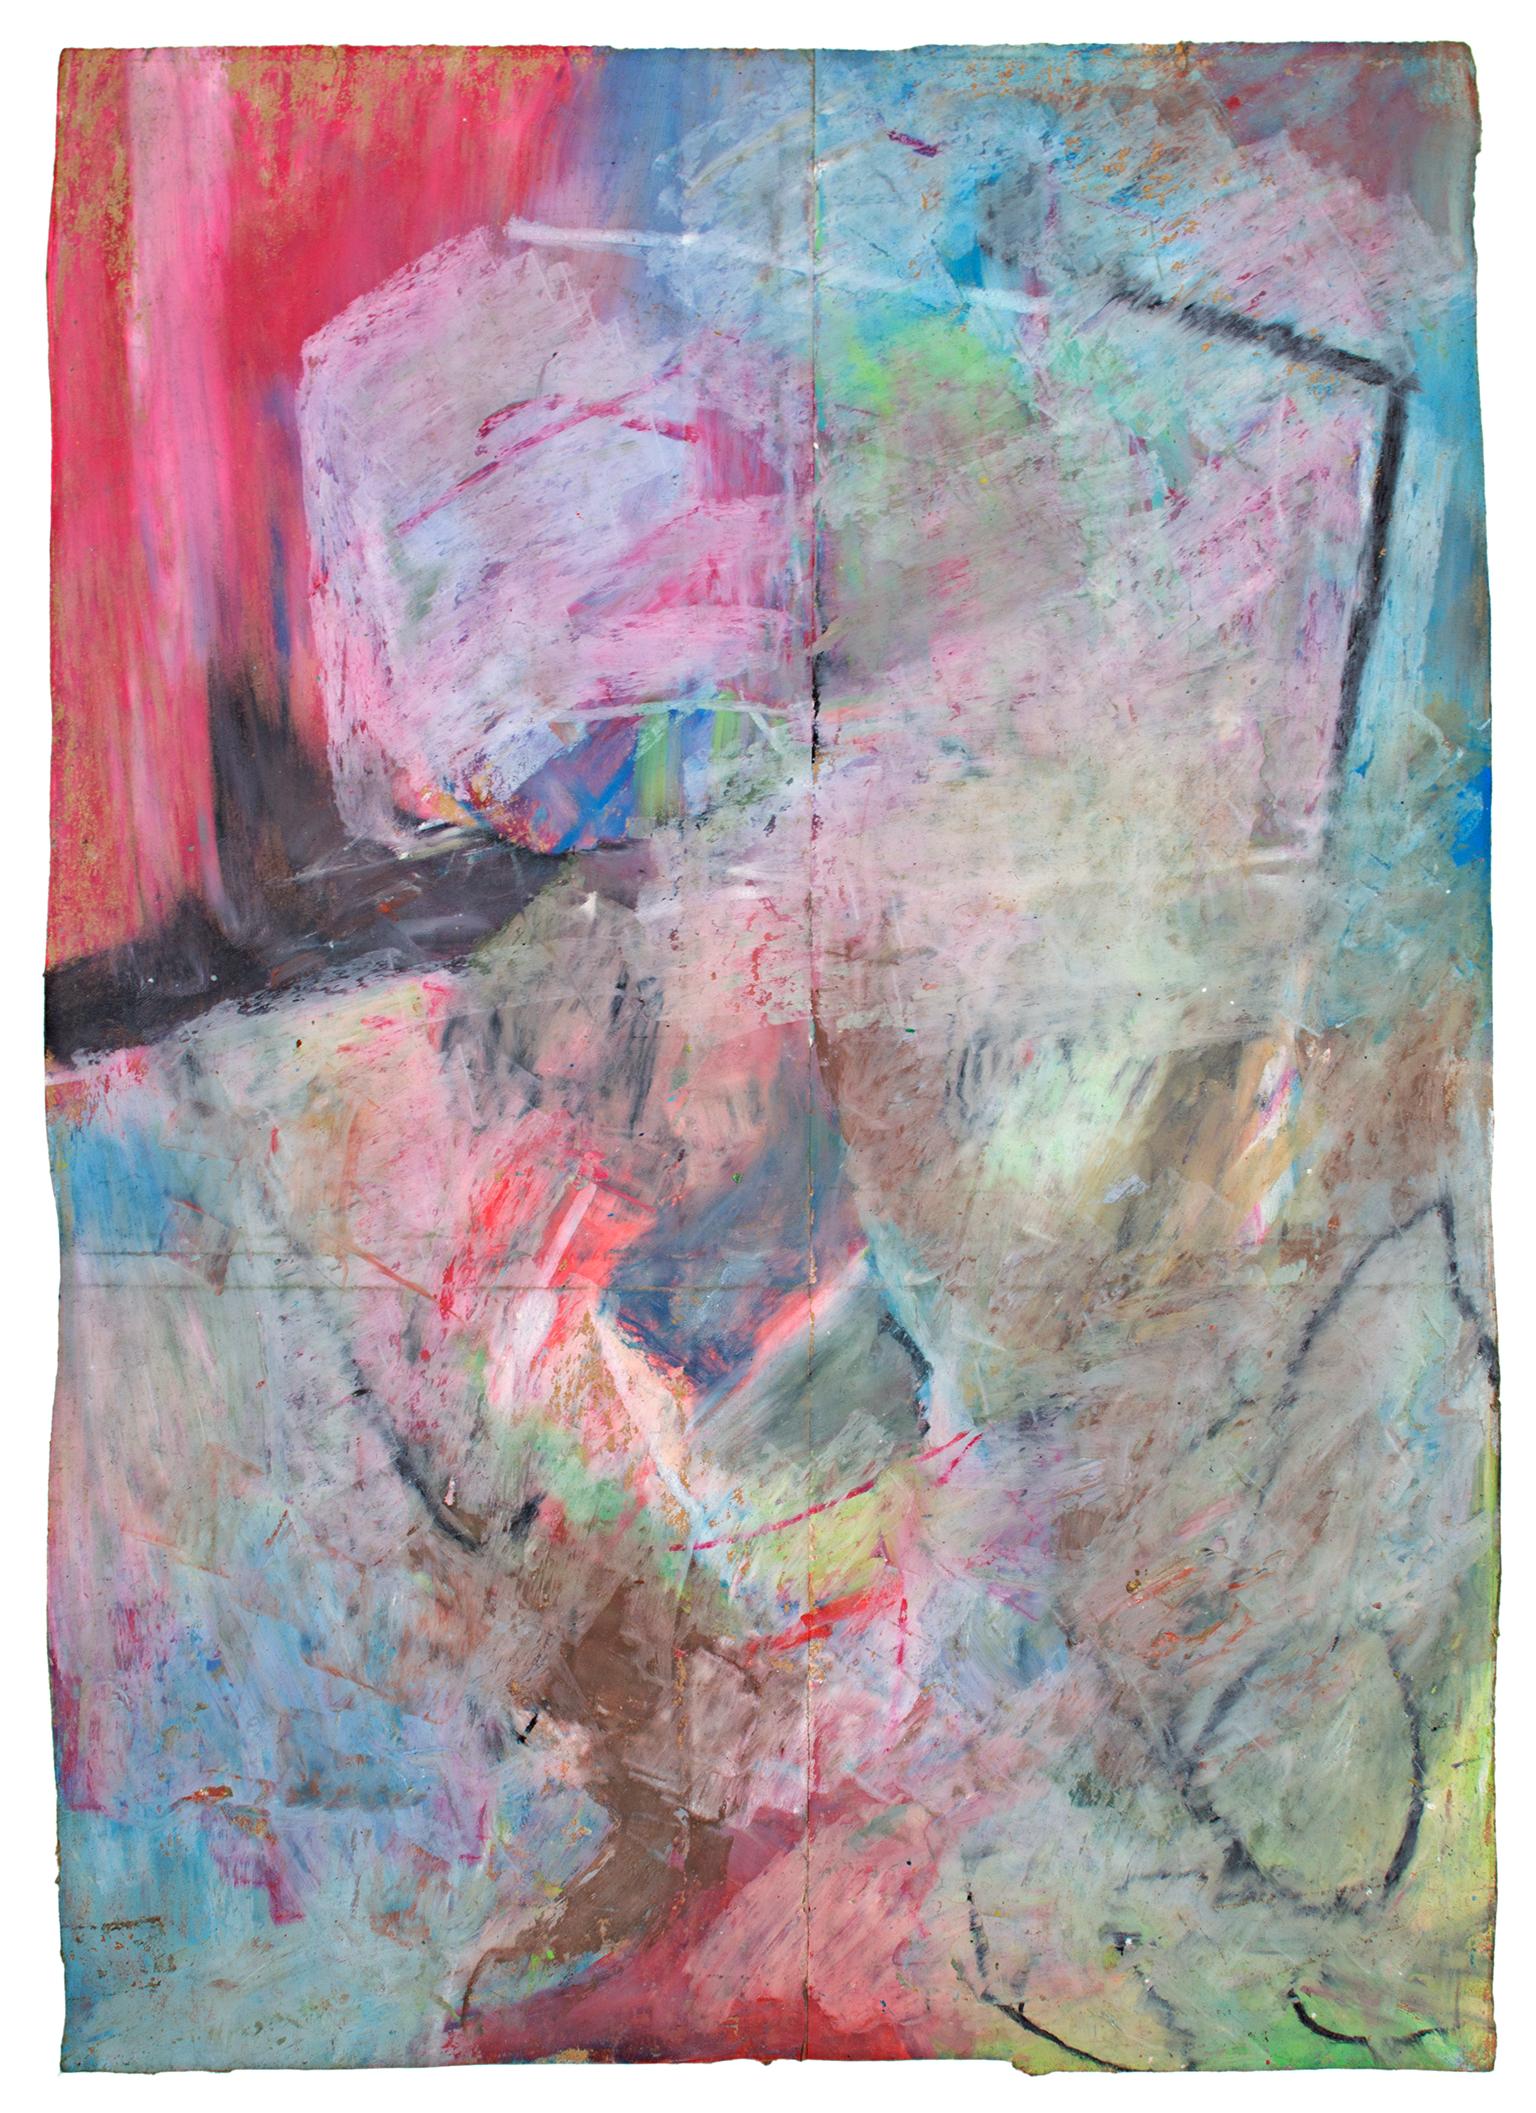 "Fap" est un pastel à l'huile original sur un sac d'épicerie de Reginald K. Gee. L'artiste a signé l'œuvre au dos. Il présente des marques abstraites en vert, bleu et rose pastel qui suggèrent le contour d'un visage. 

16 1/2" x 11 3/4"